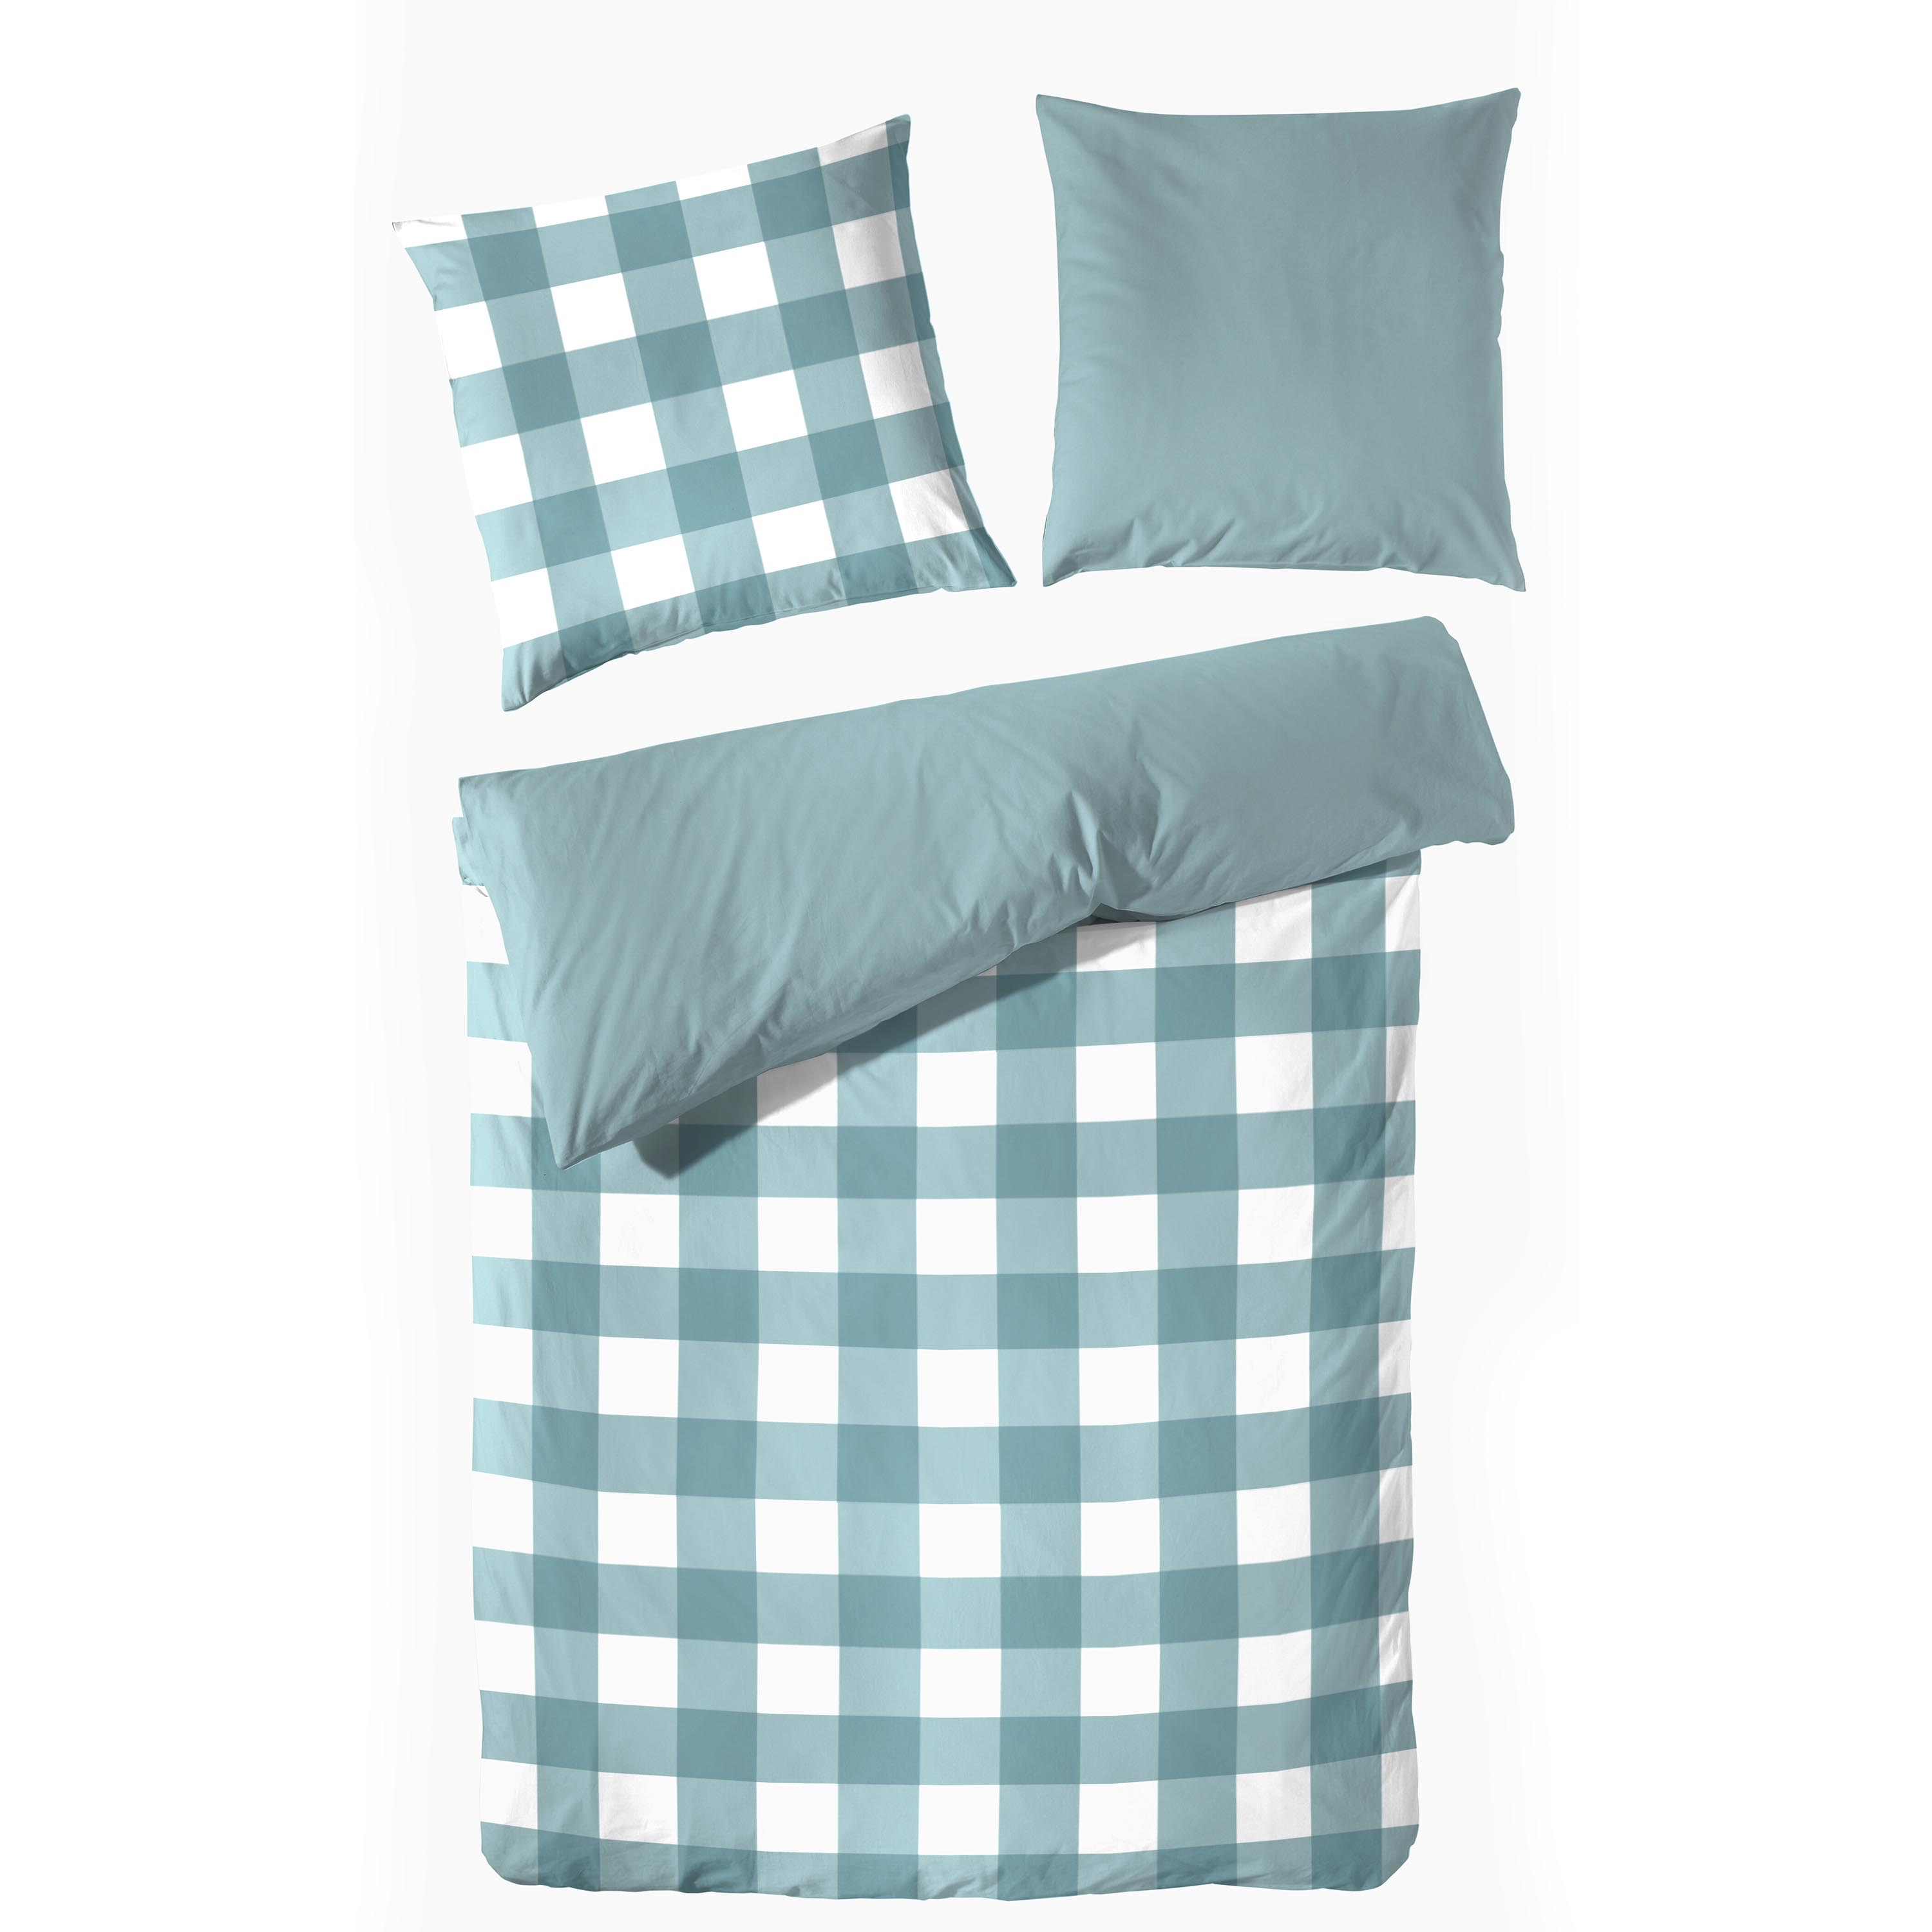 Traumhaft gut schlafen – Perkal-Bettwäsche, 2-teilig, mit Karo-Muster, versch. Farben und Größen 